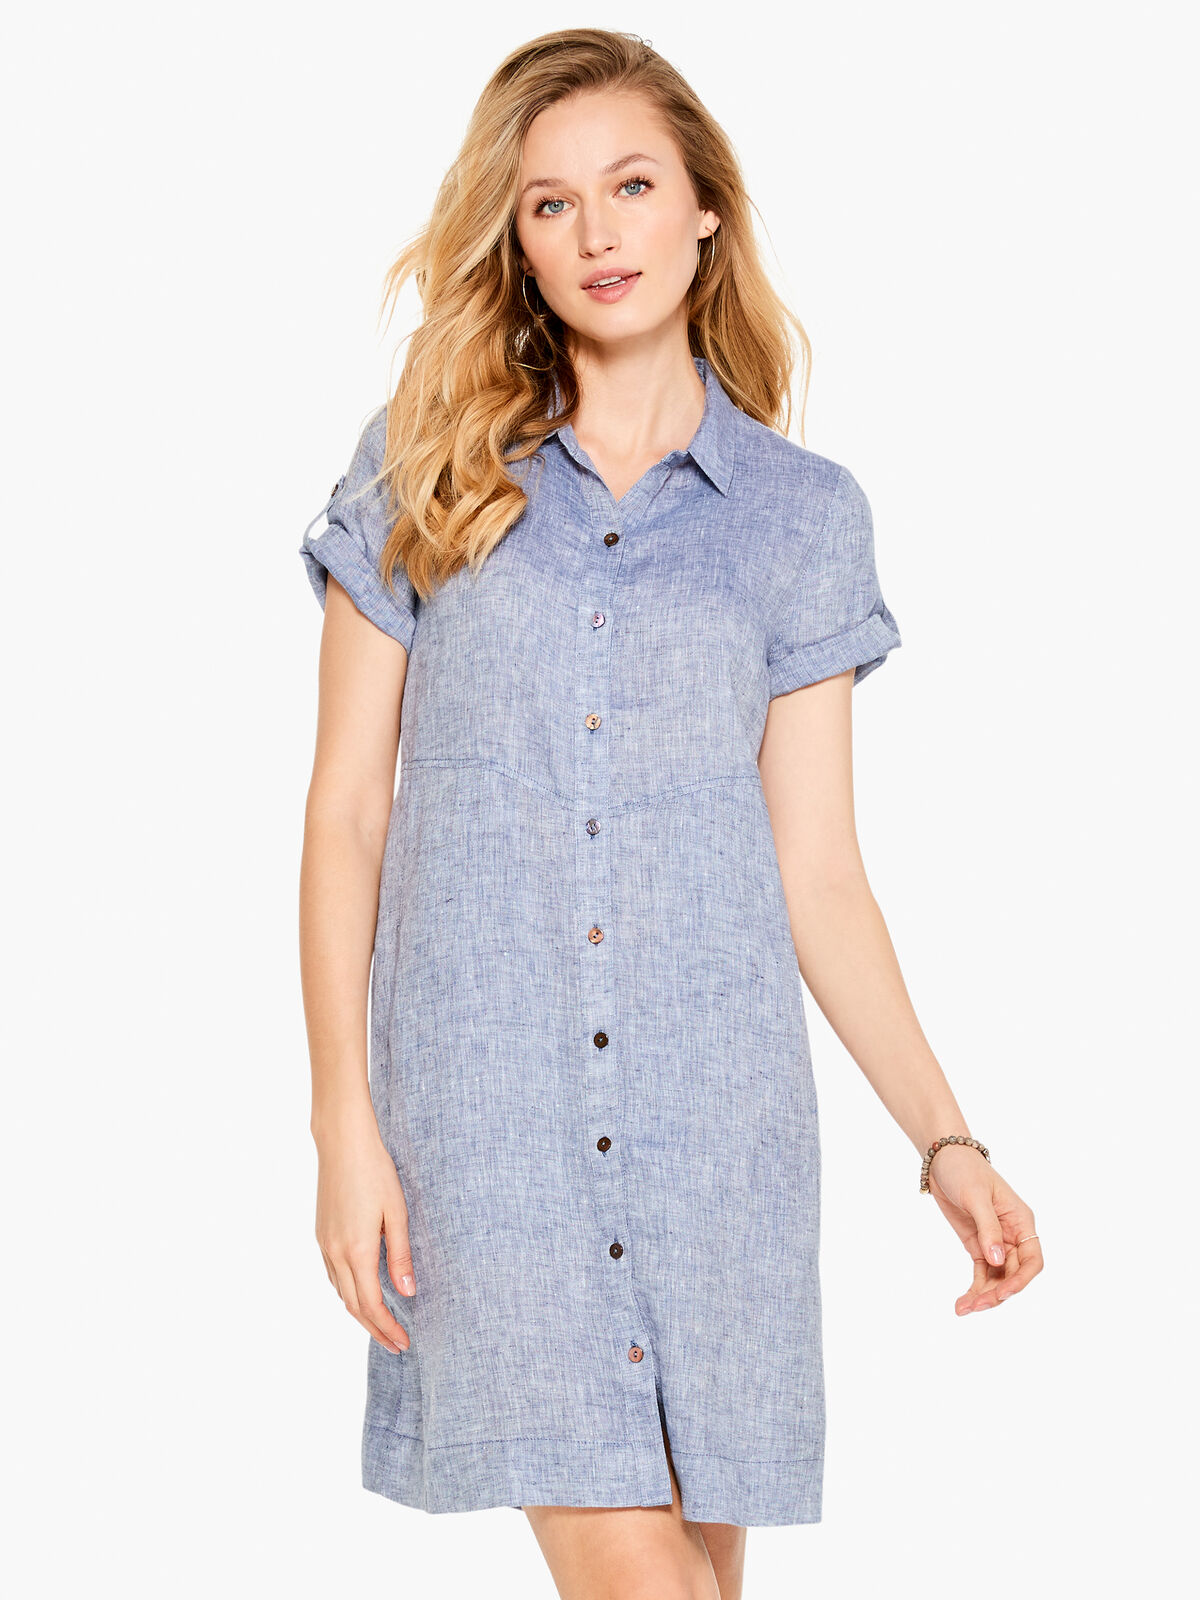 Drifty Linen Shirt Dress